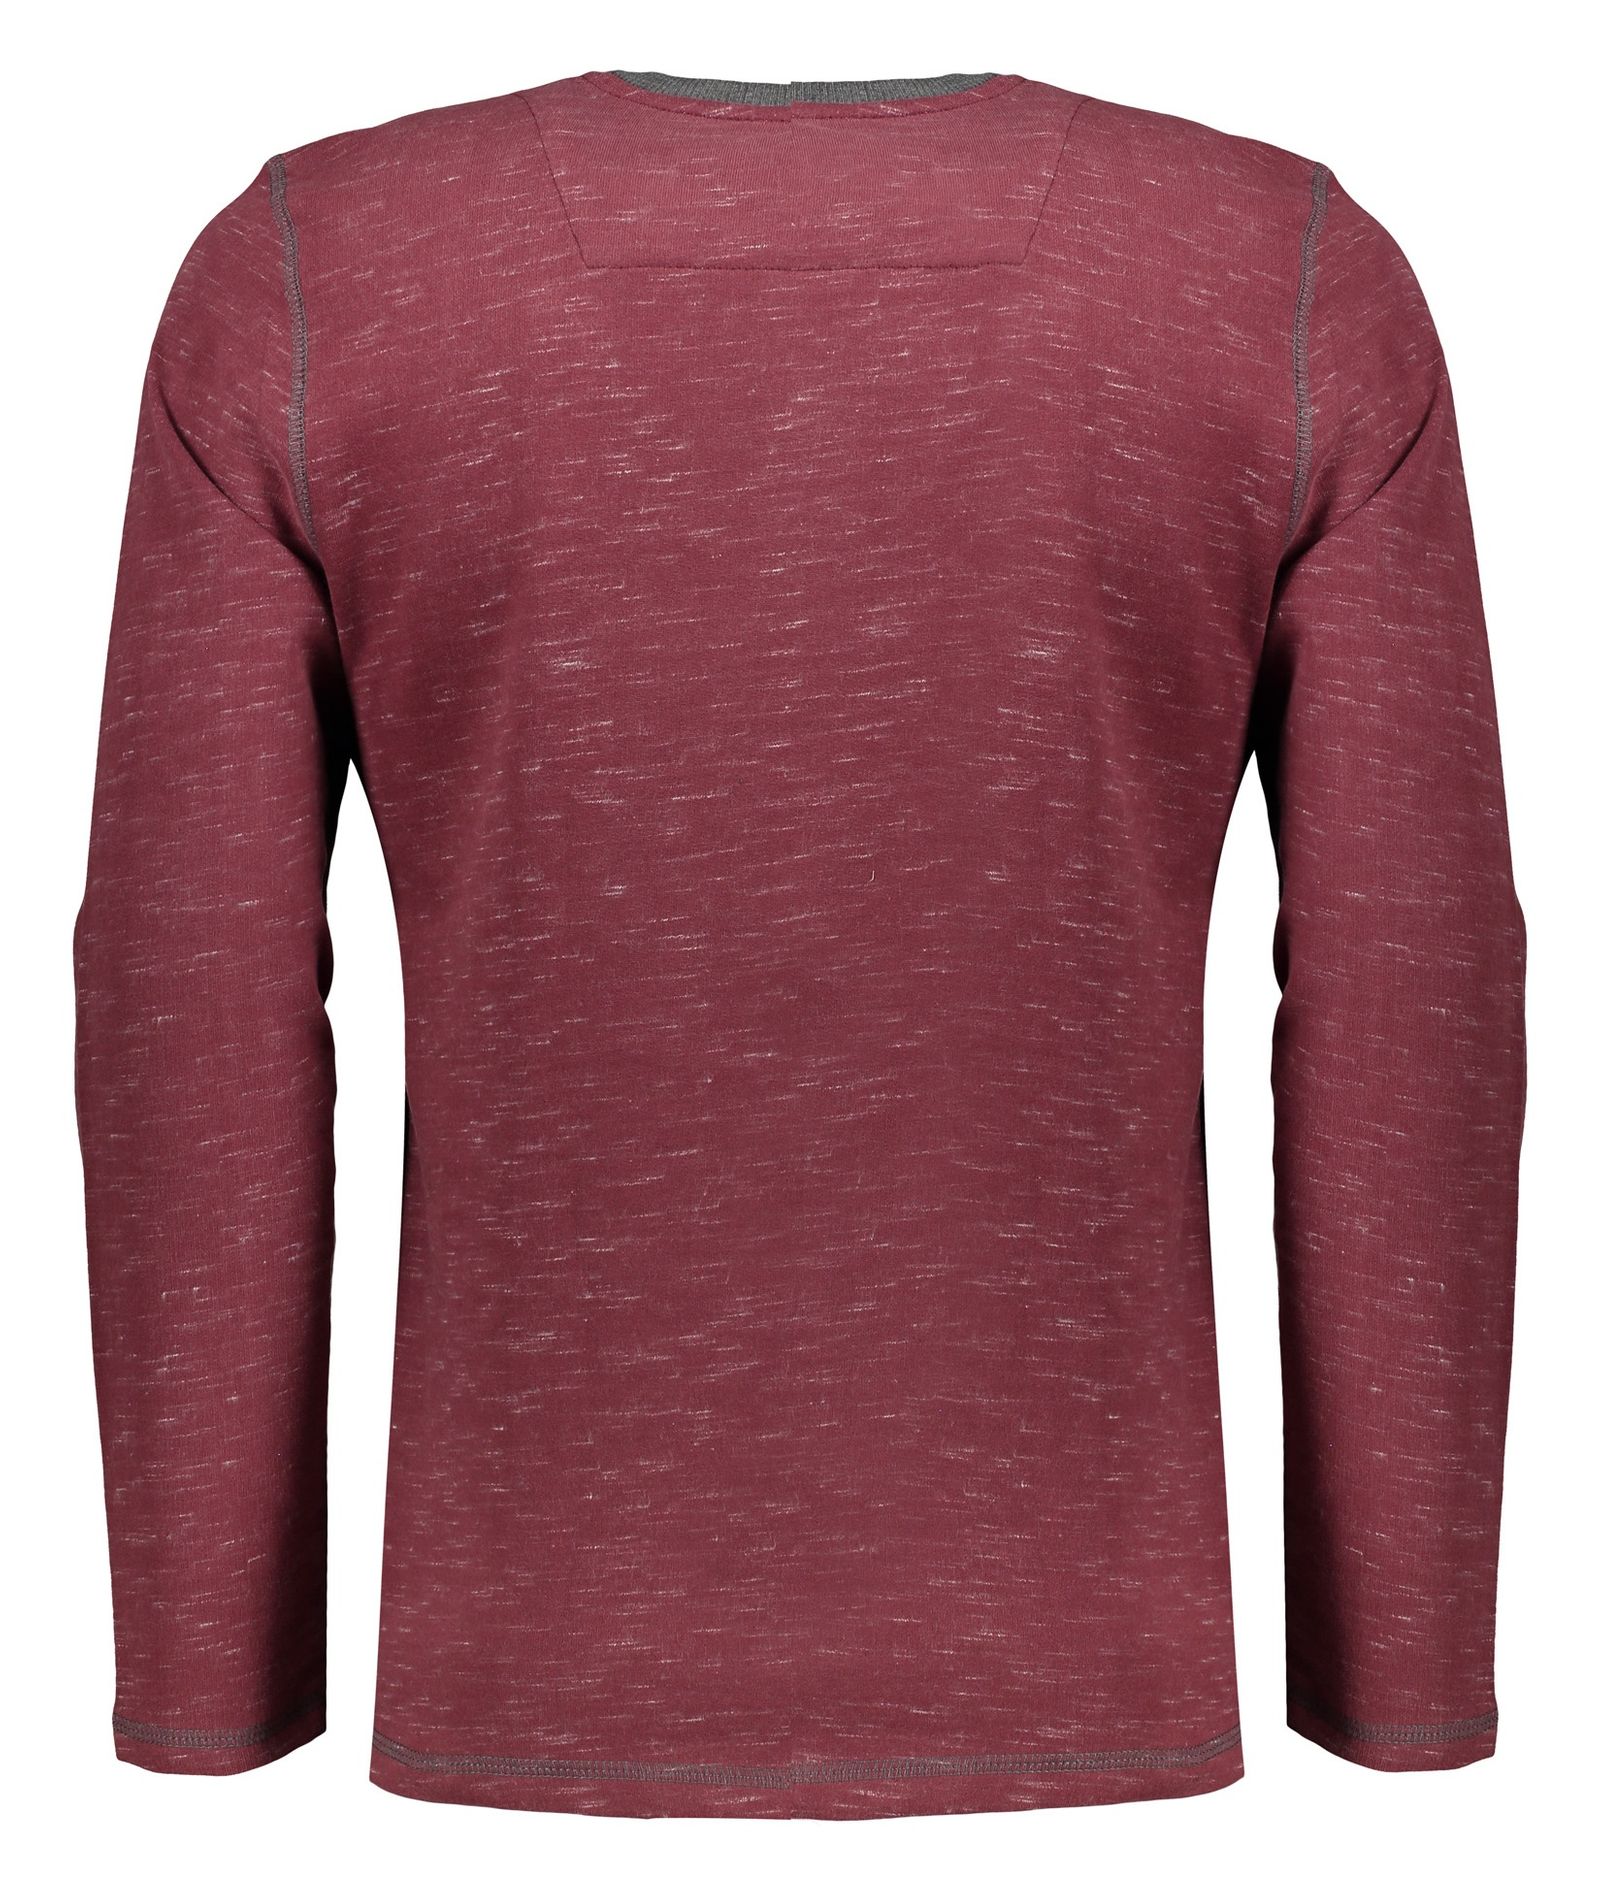 تی شرت مردانه گارودی مدل 2003107016-85 - عنابی - 4